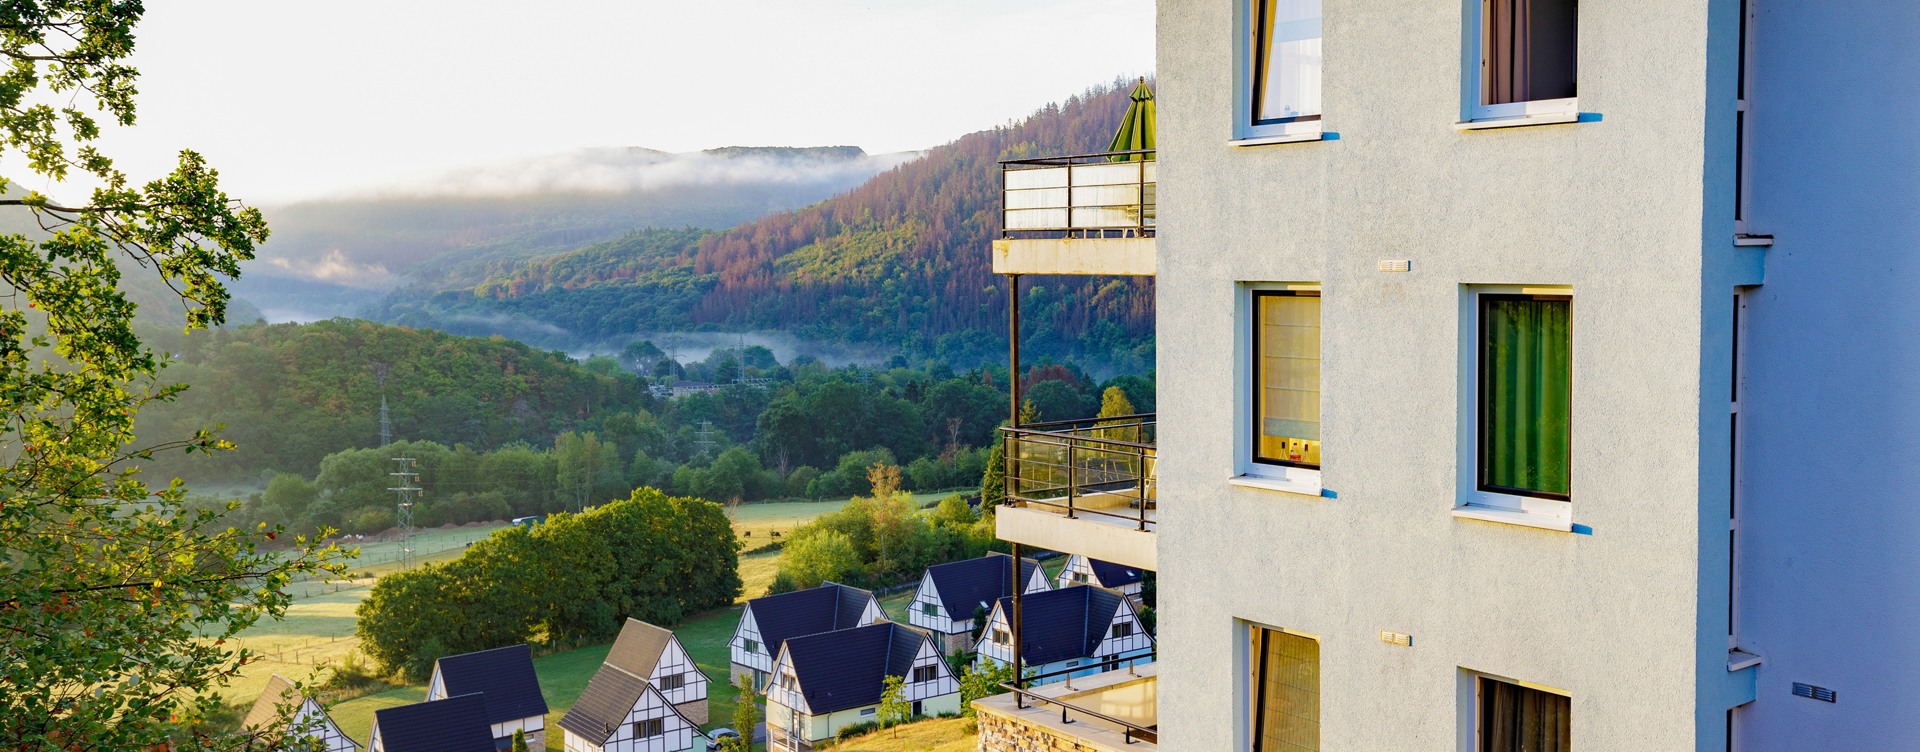 Der schönste Ferienpark in der Eifel:
Dormio Resort Eifeler Tor